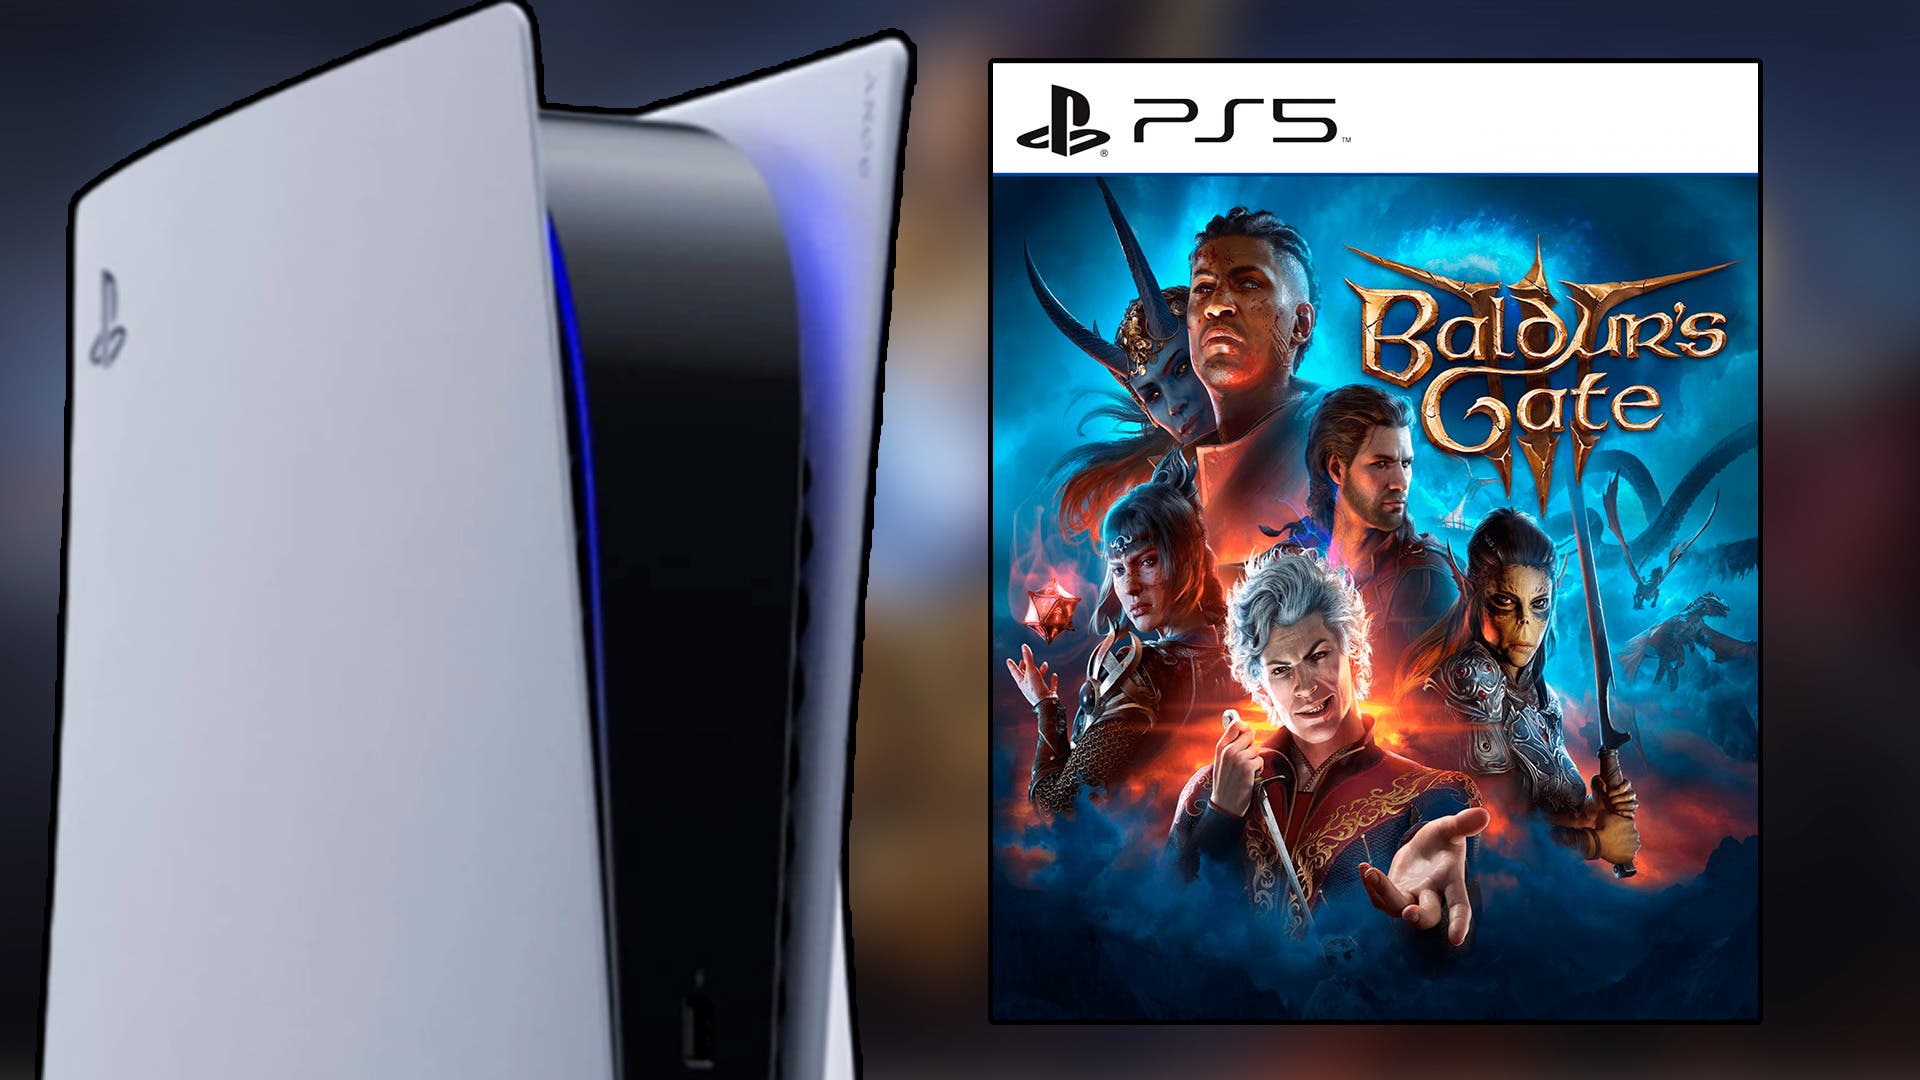 Esperas una versión física de Baldur's Gate 3 para PS5? Pues creo que tengo  buenas noticias para ti